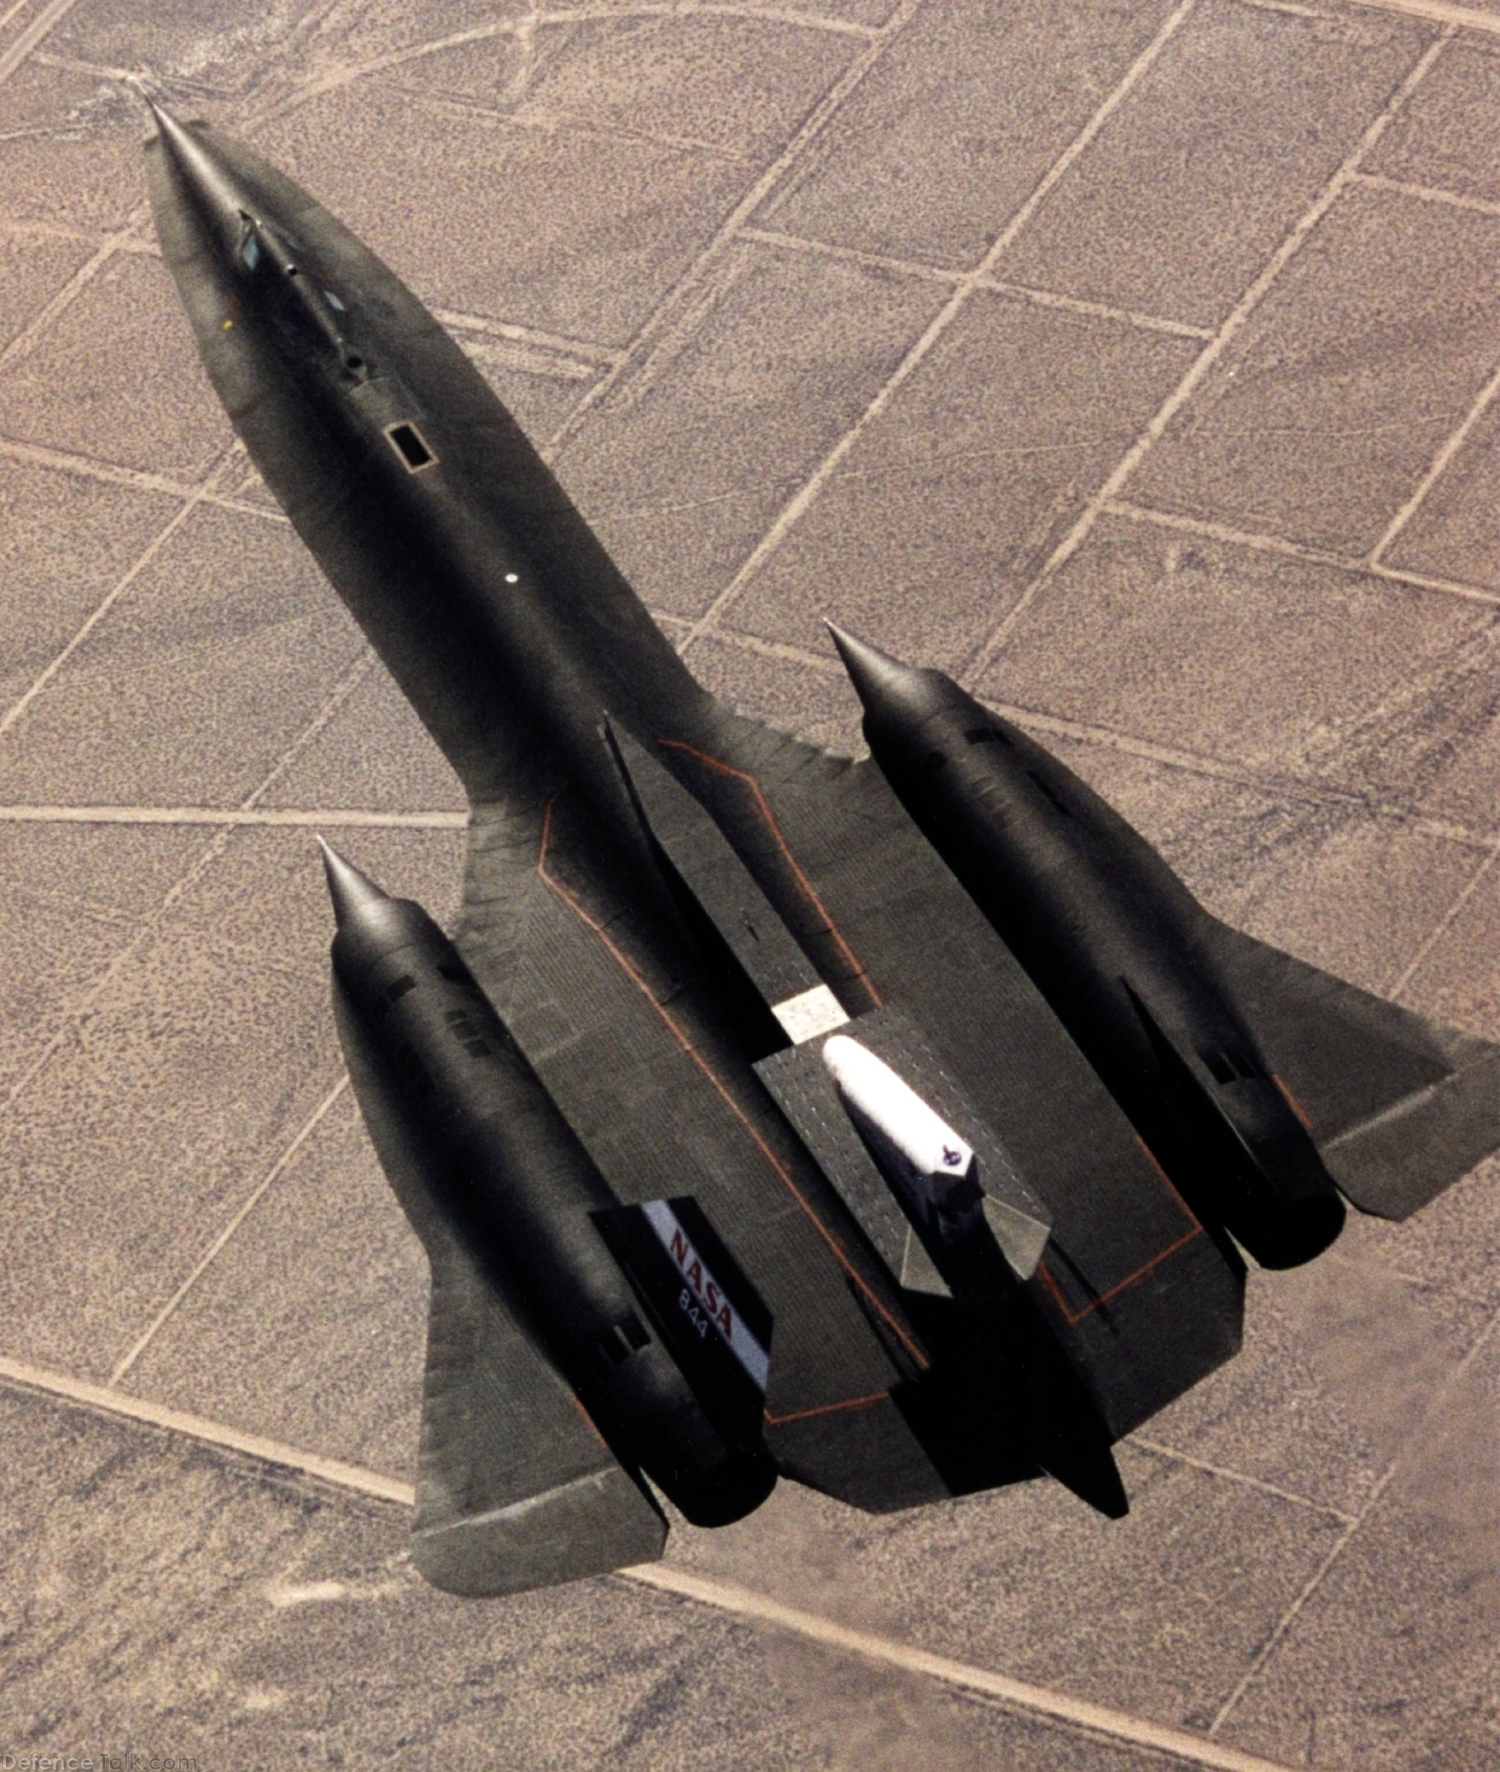 NASA SR-71 Blackbird Test Aircraft